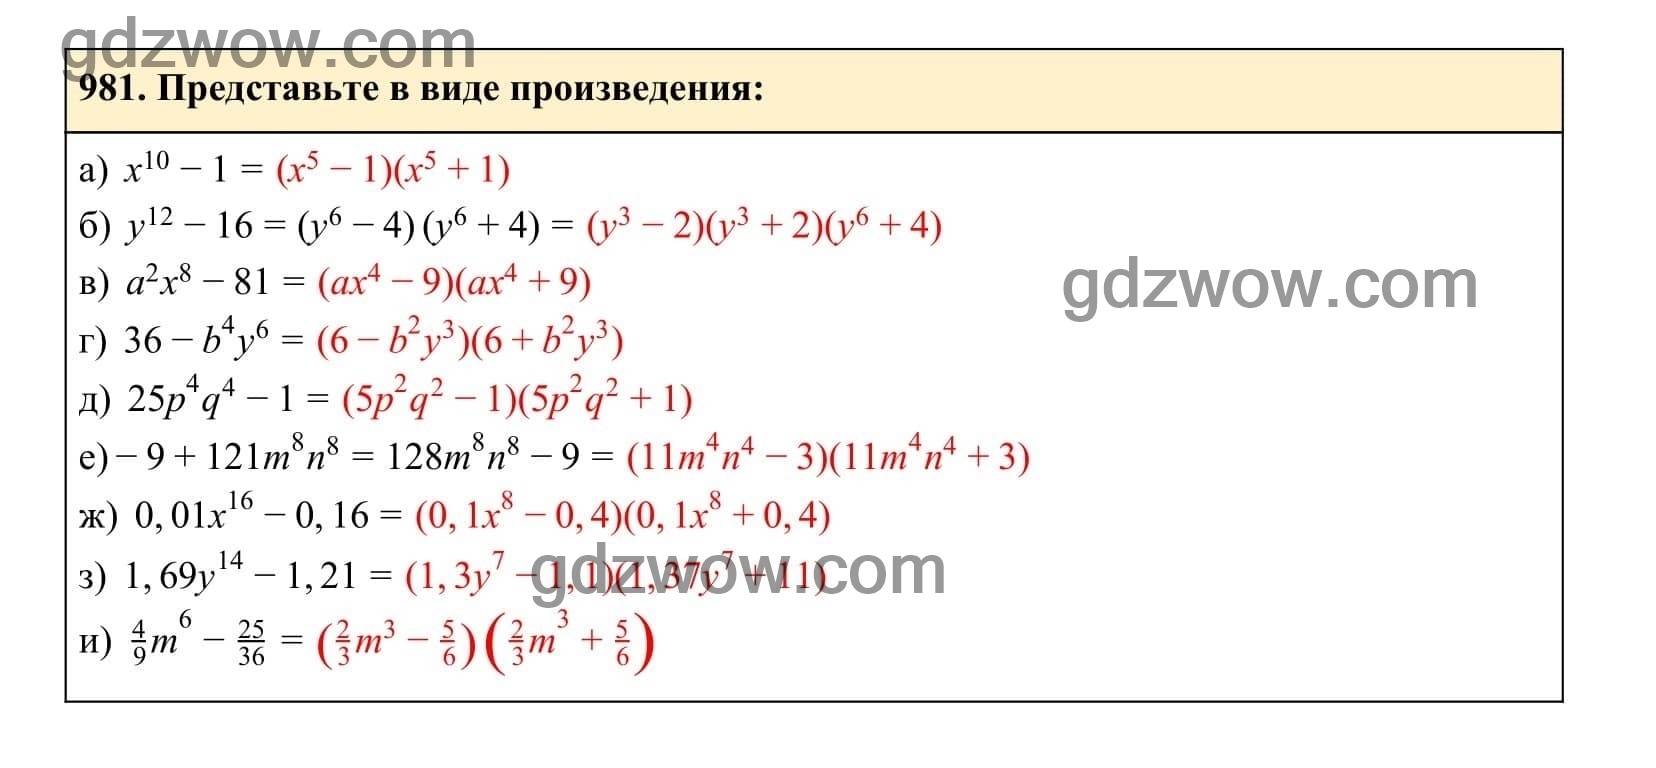 Упражнение 981 - ГДЗ по Алгебре 7 класс Учебник Макарычев (решебник) - GDZwow